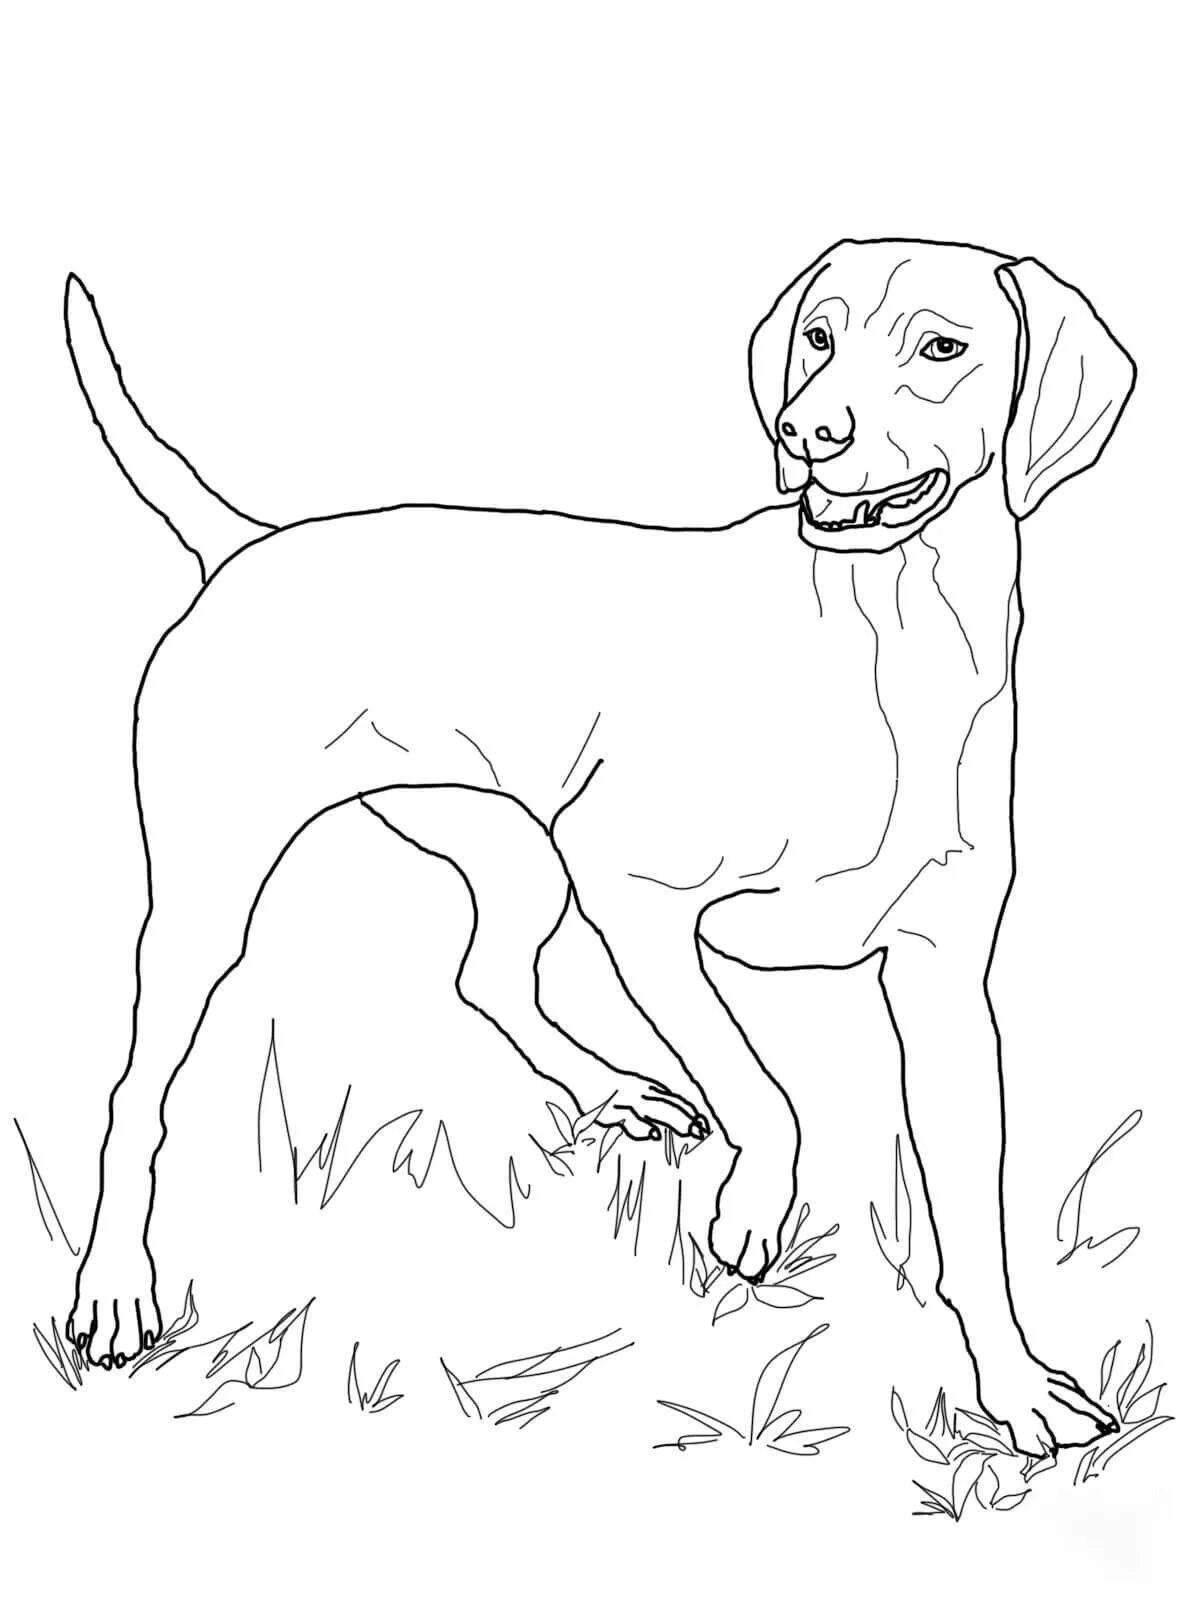 Dashing hunting dog coloring page